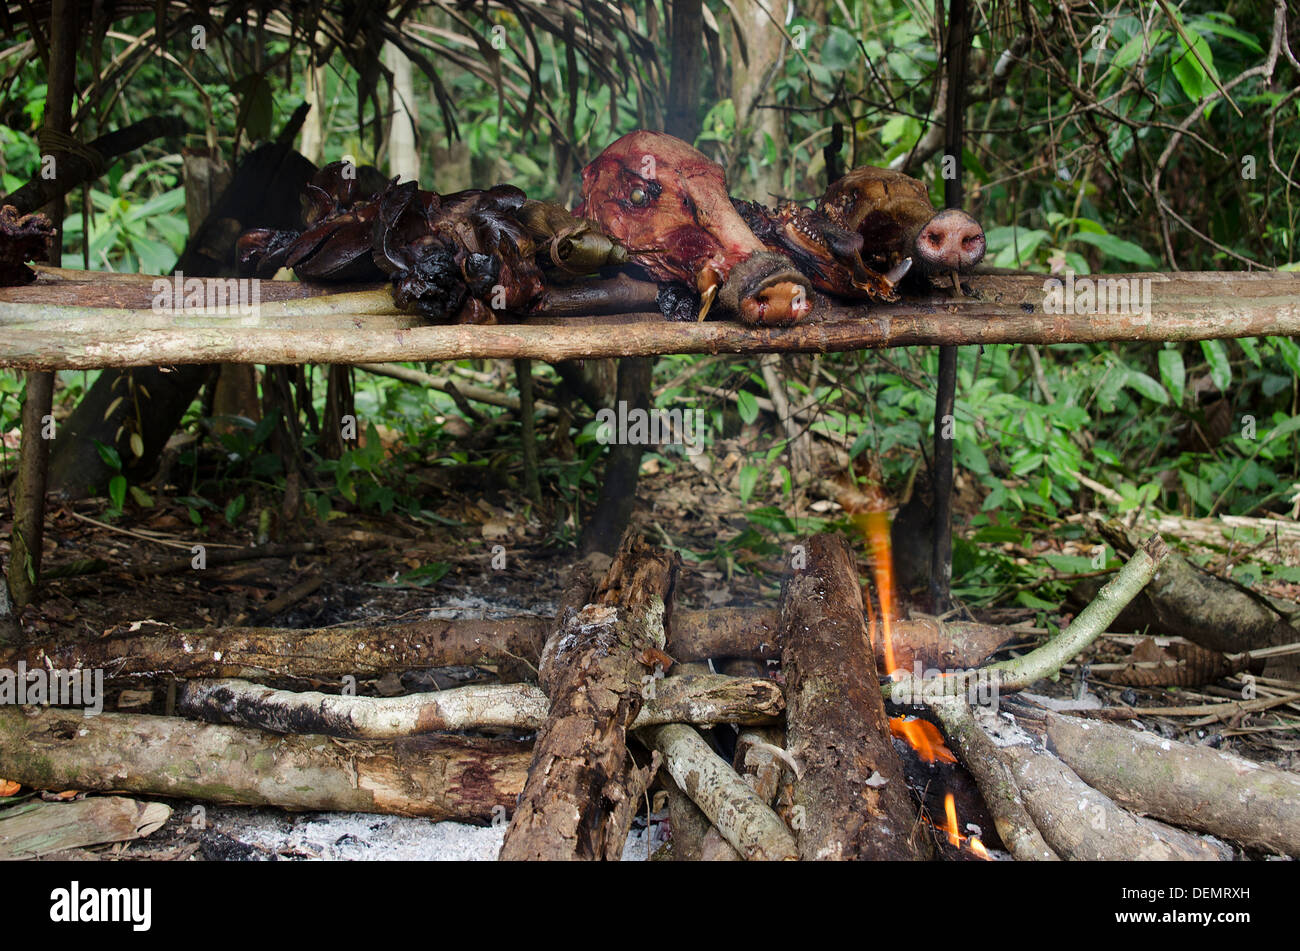 Sustainable bushmeat hunting amazonia peru Stock Photo